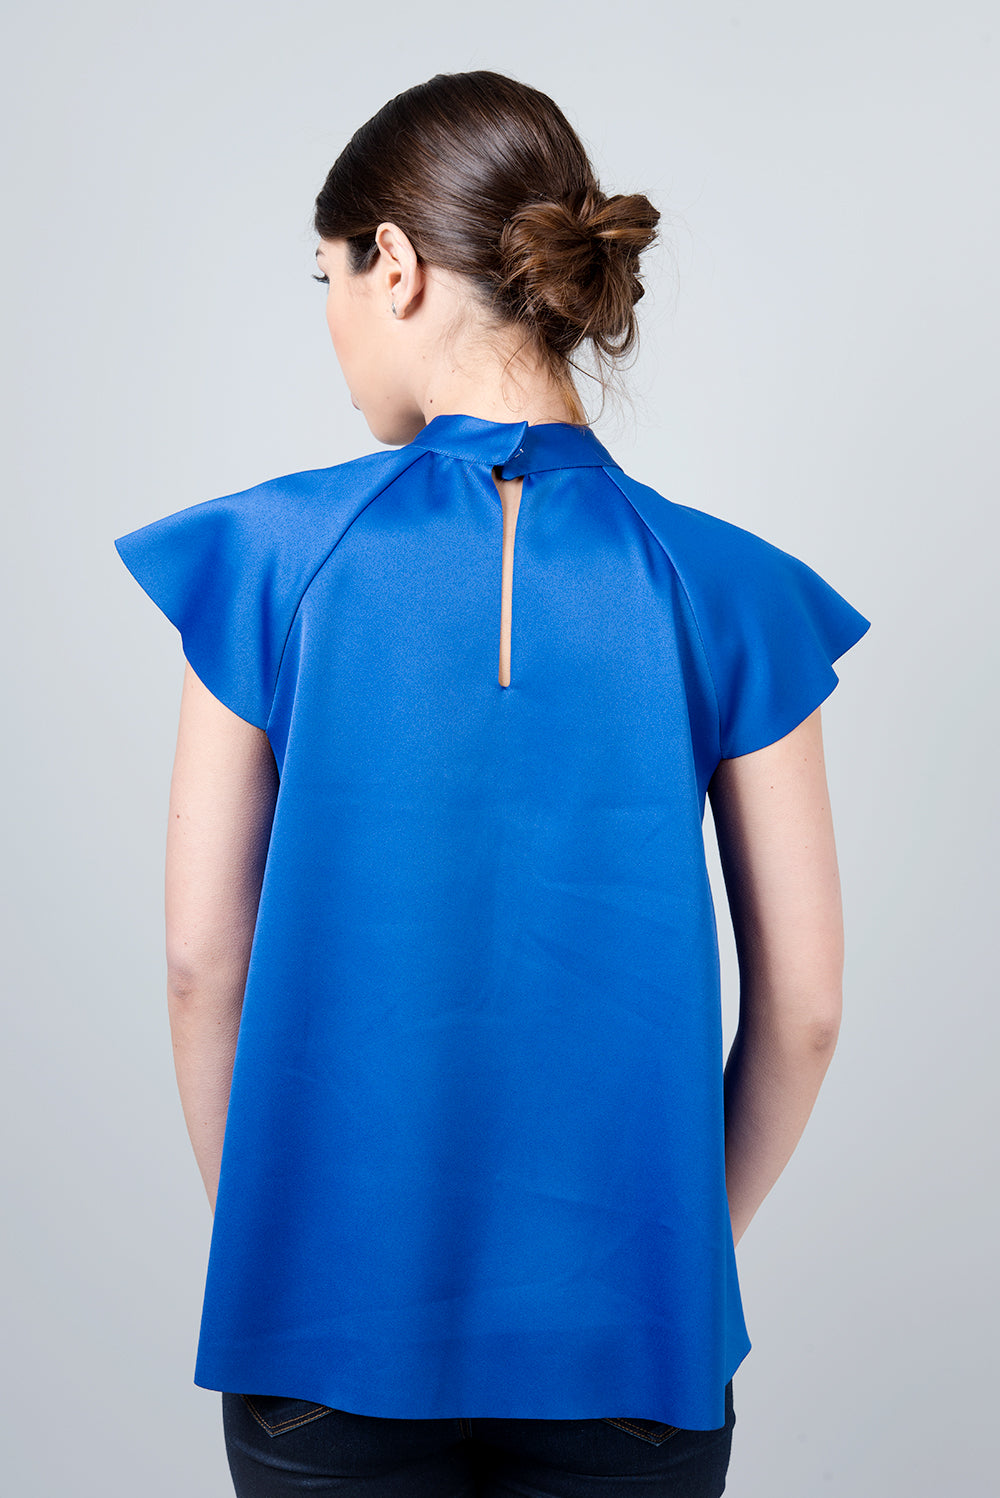 Blue collar shirt - Omicron shirt